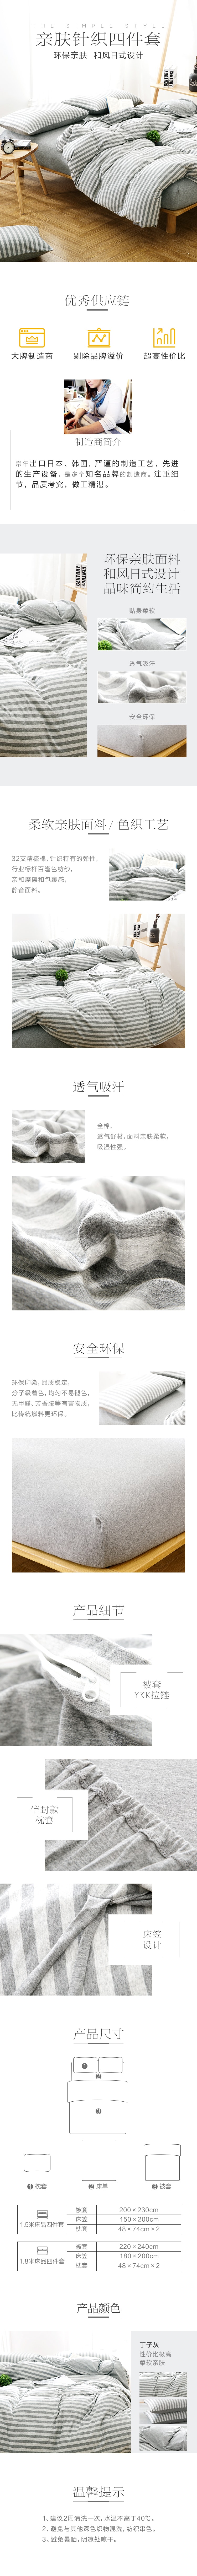 Grey Striped 100% Cotton Duvet Cover Set 4pcs 220*240cm